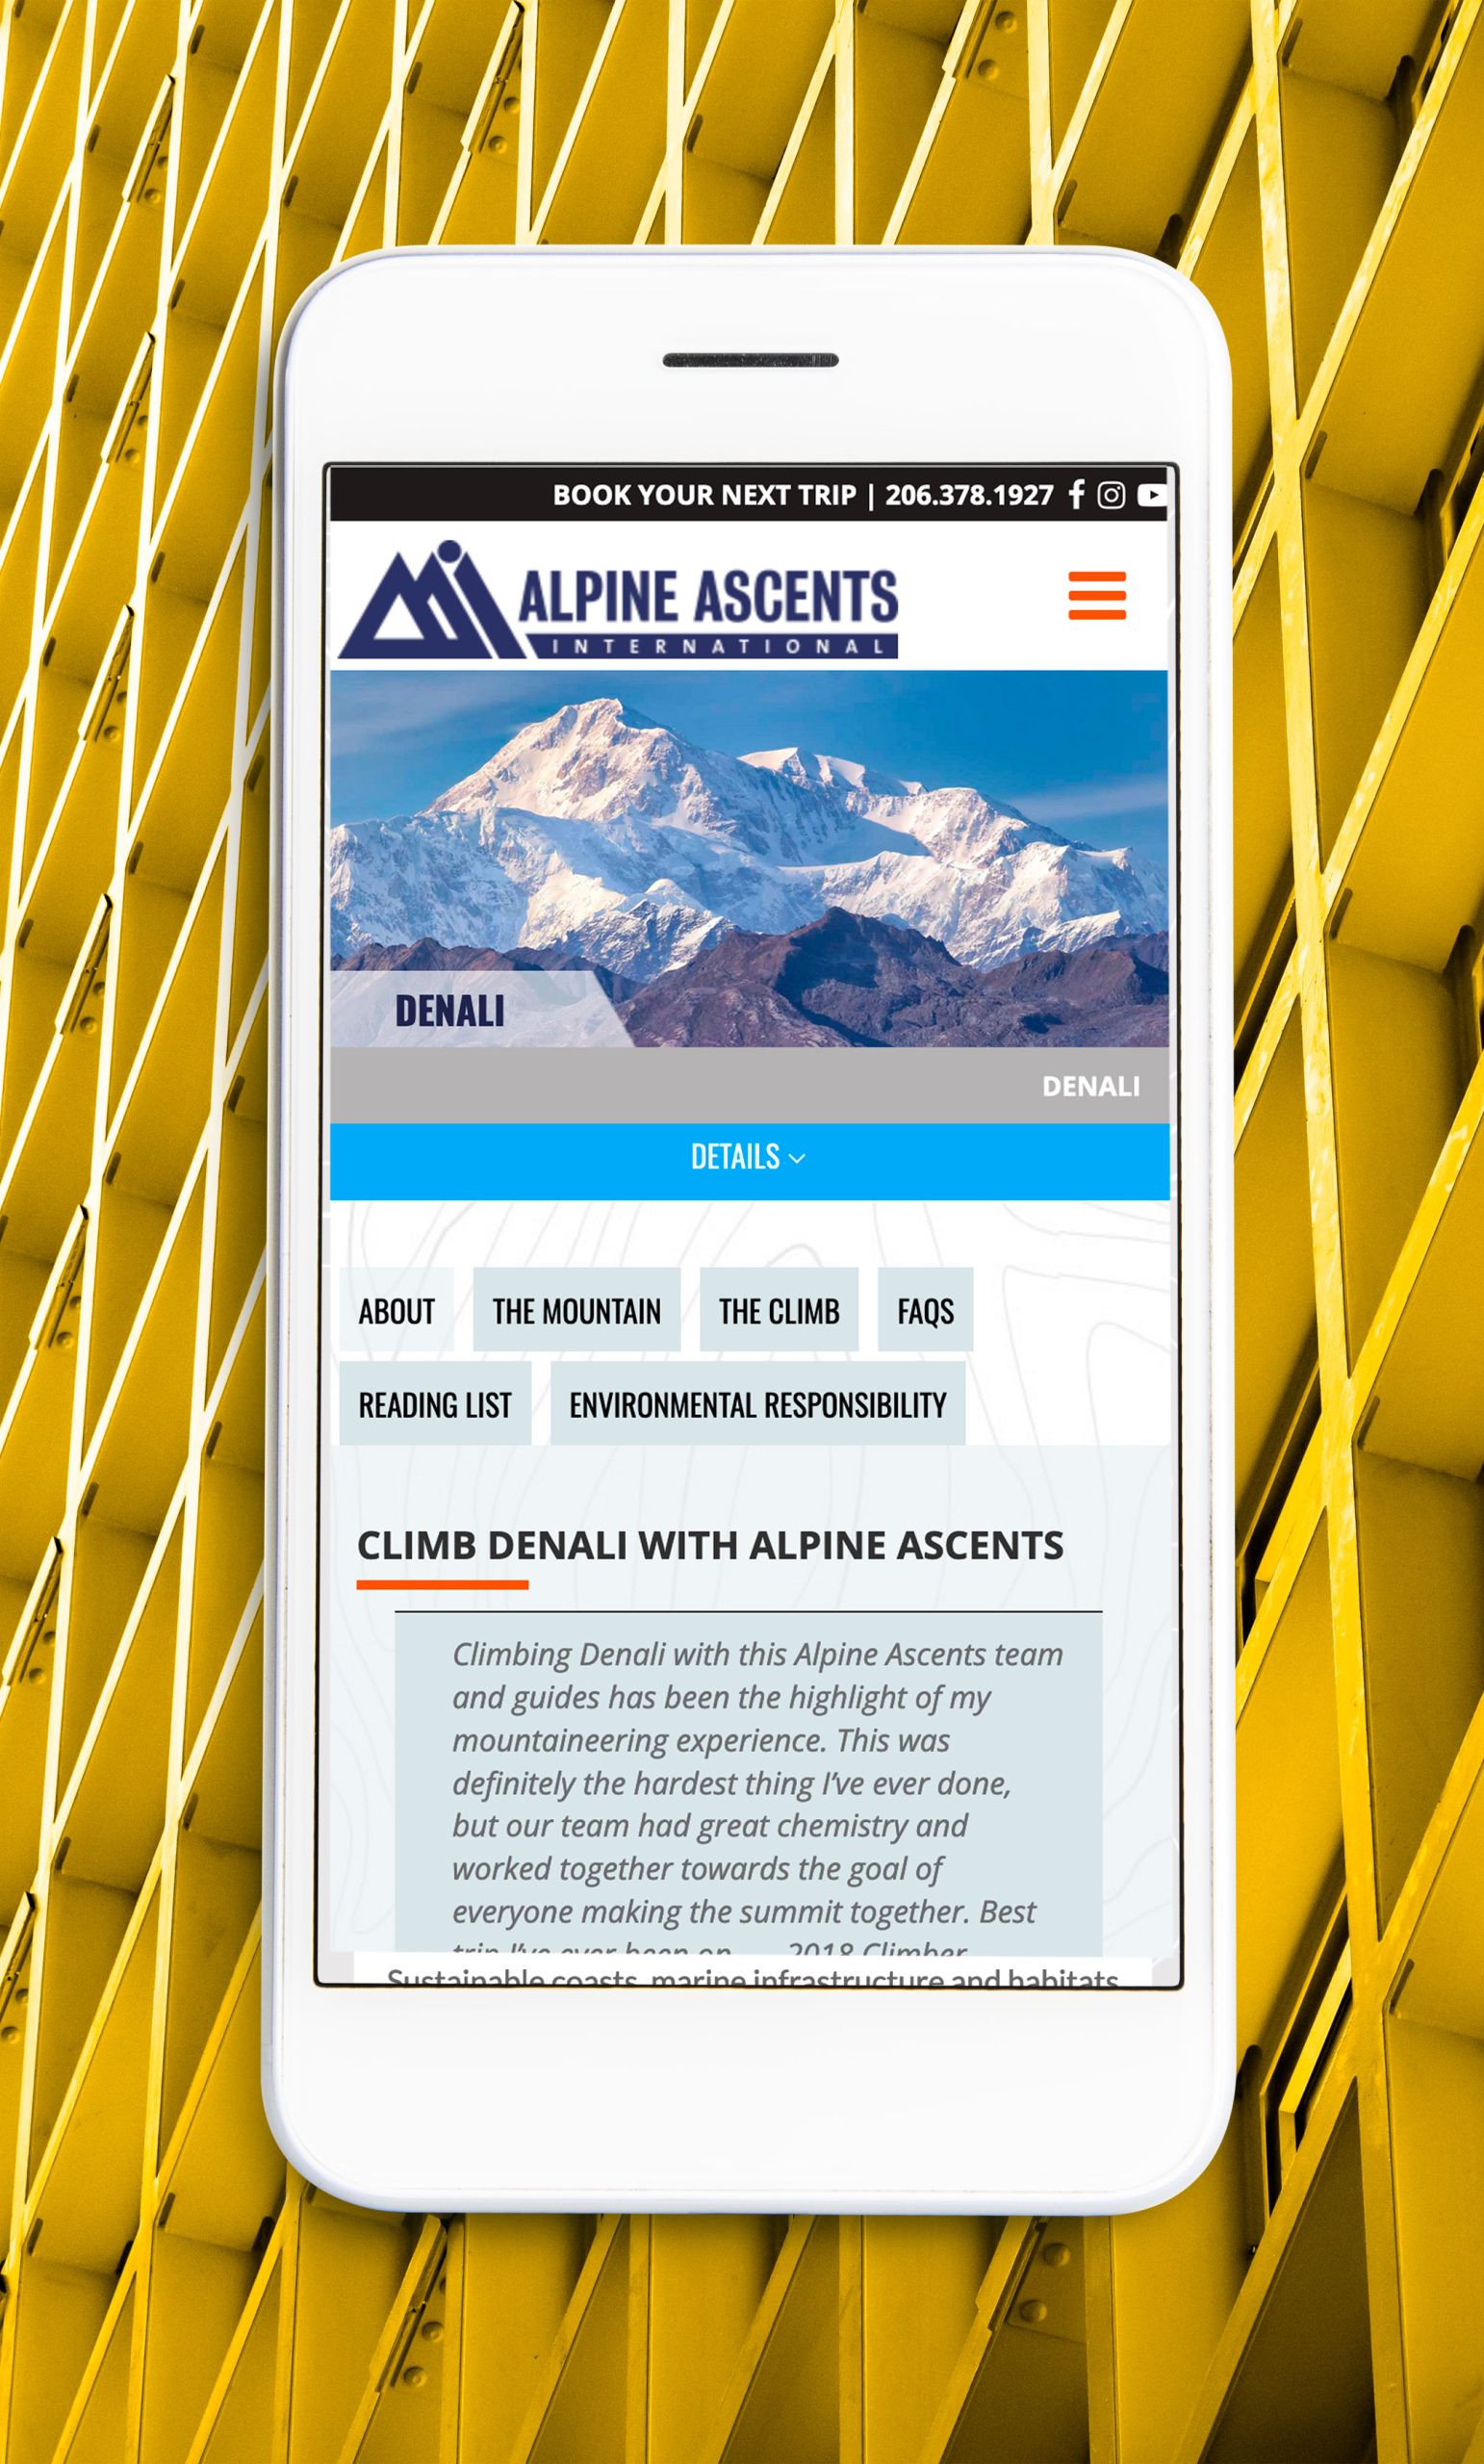 Alpine Ascents